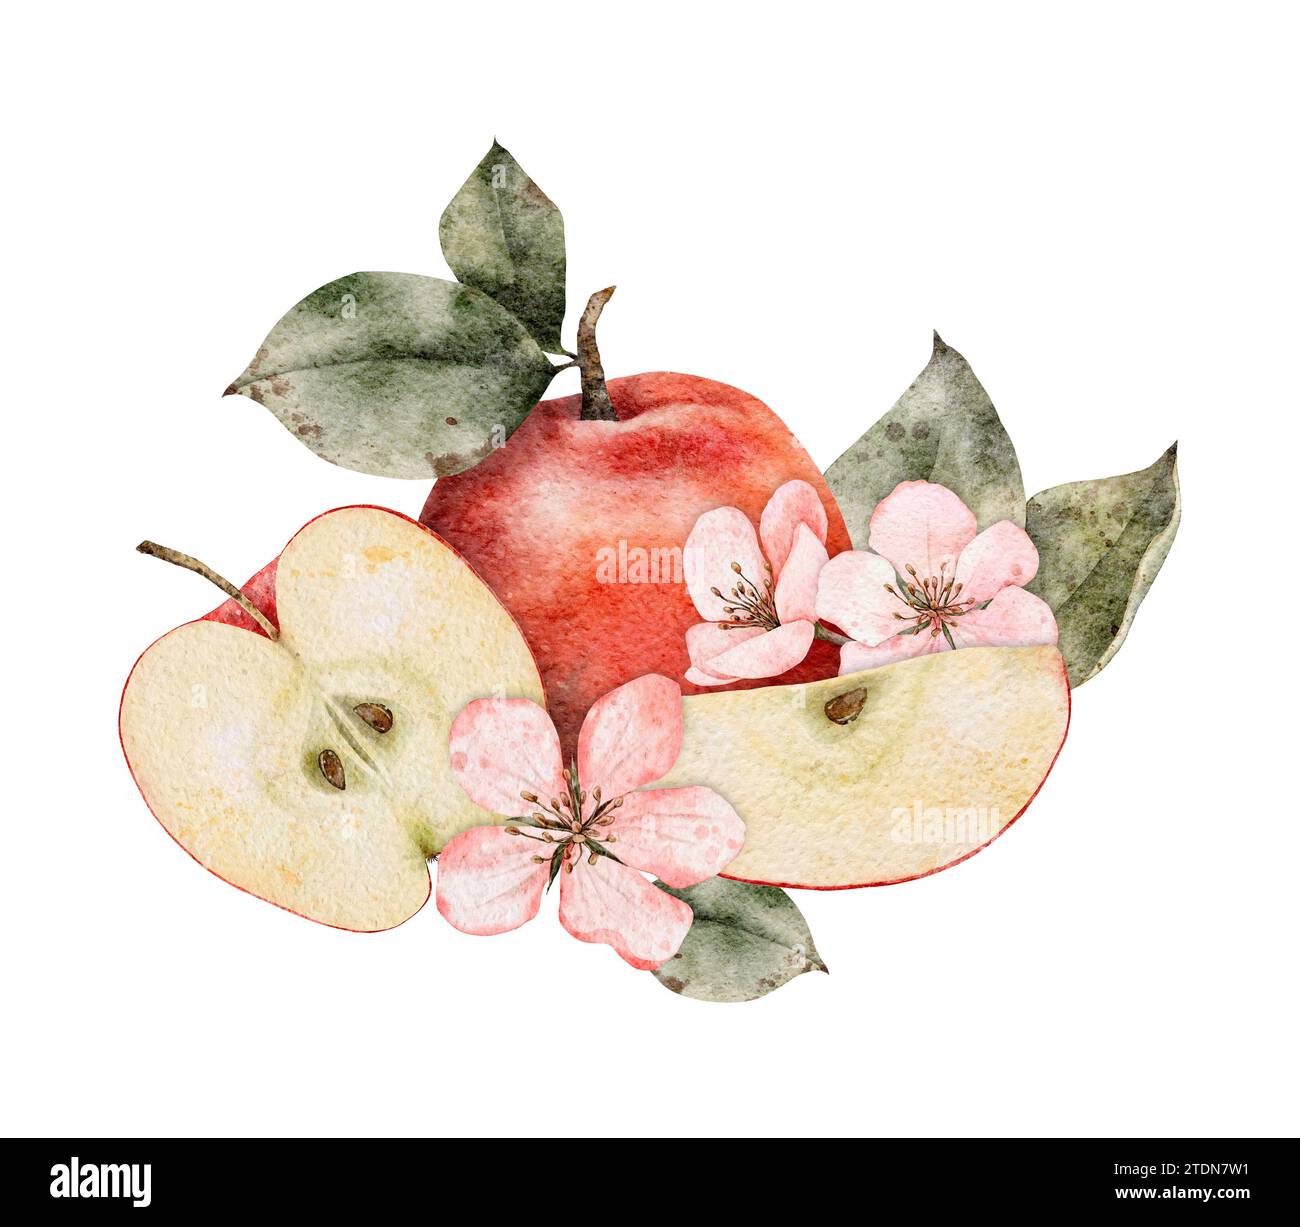 Aquarellblühende Äpfel, grüne und rote reife Äpfel. Handgezeichnete Apfelscheiben Illustration für Saftpackung, Karte, Einladung Stockfoto